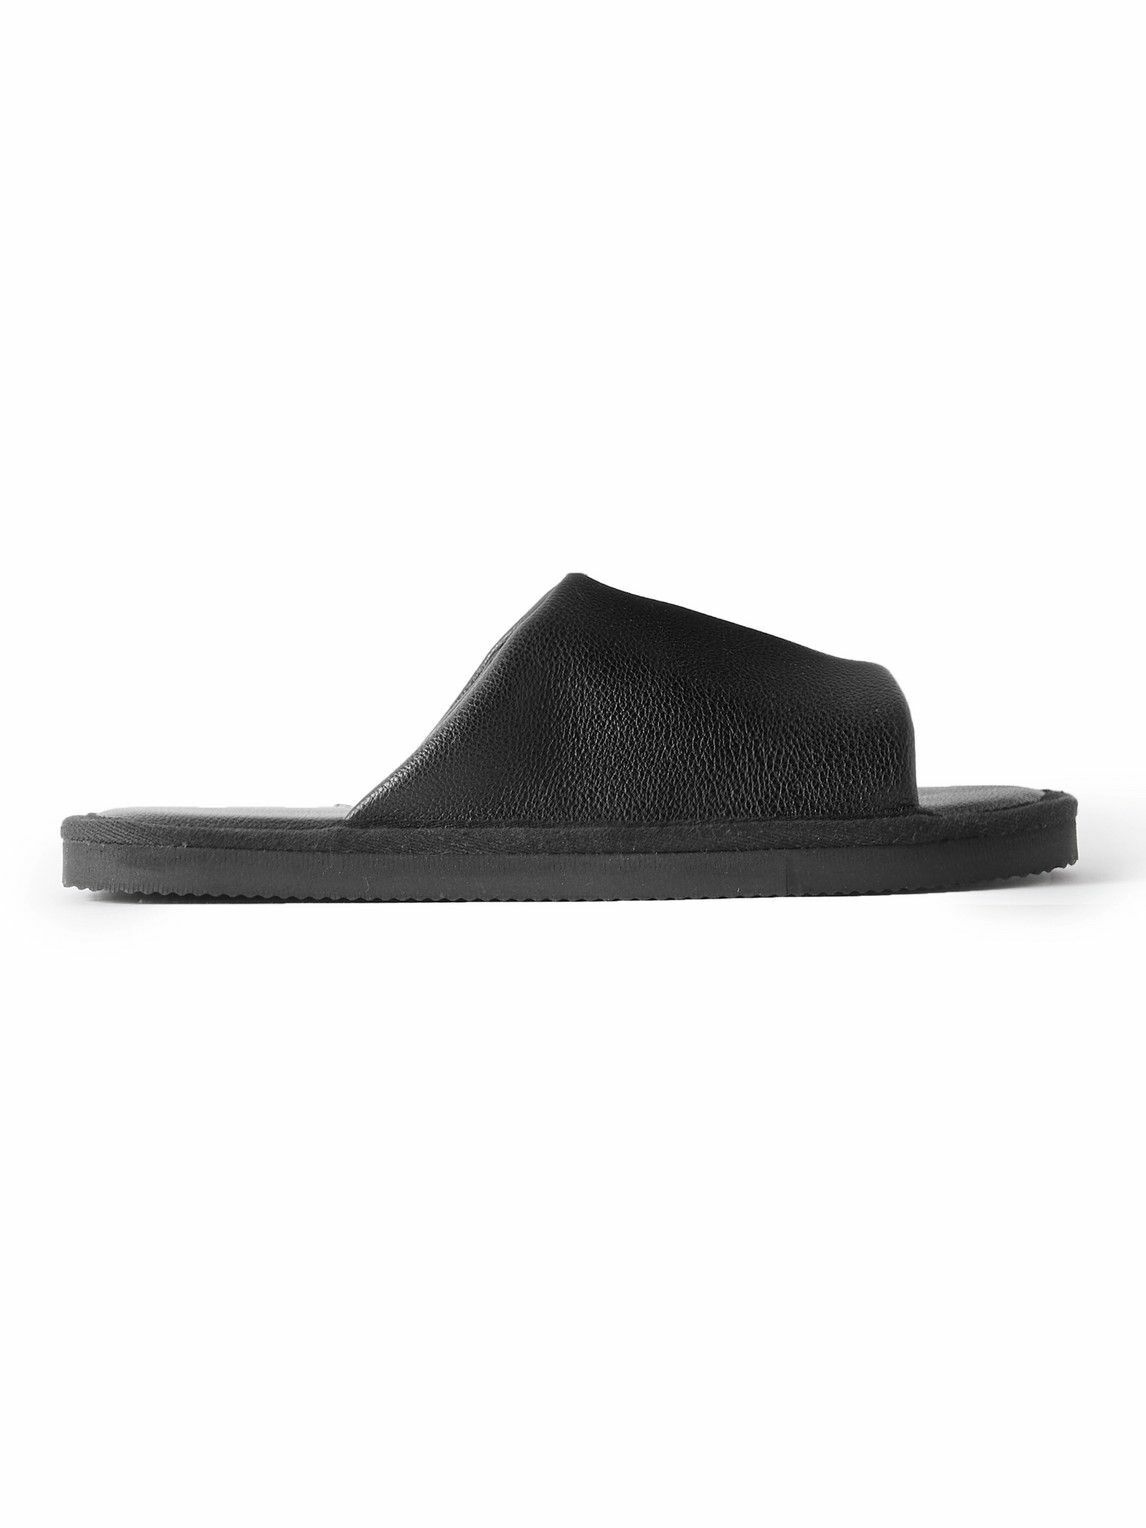 OAS - Vegan Full-Grain Leather Slides - Black OAS